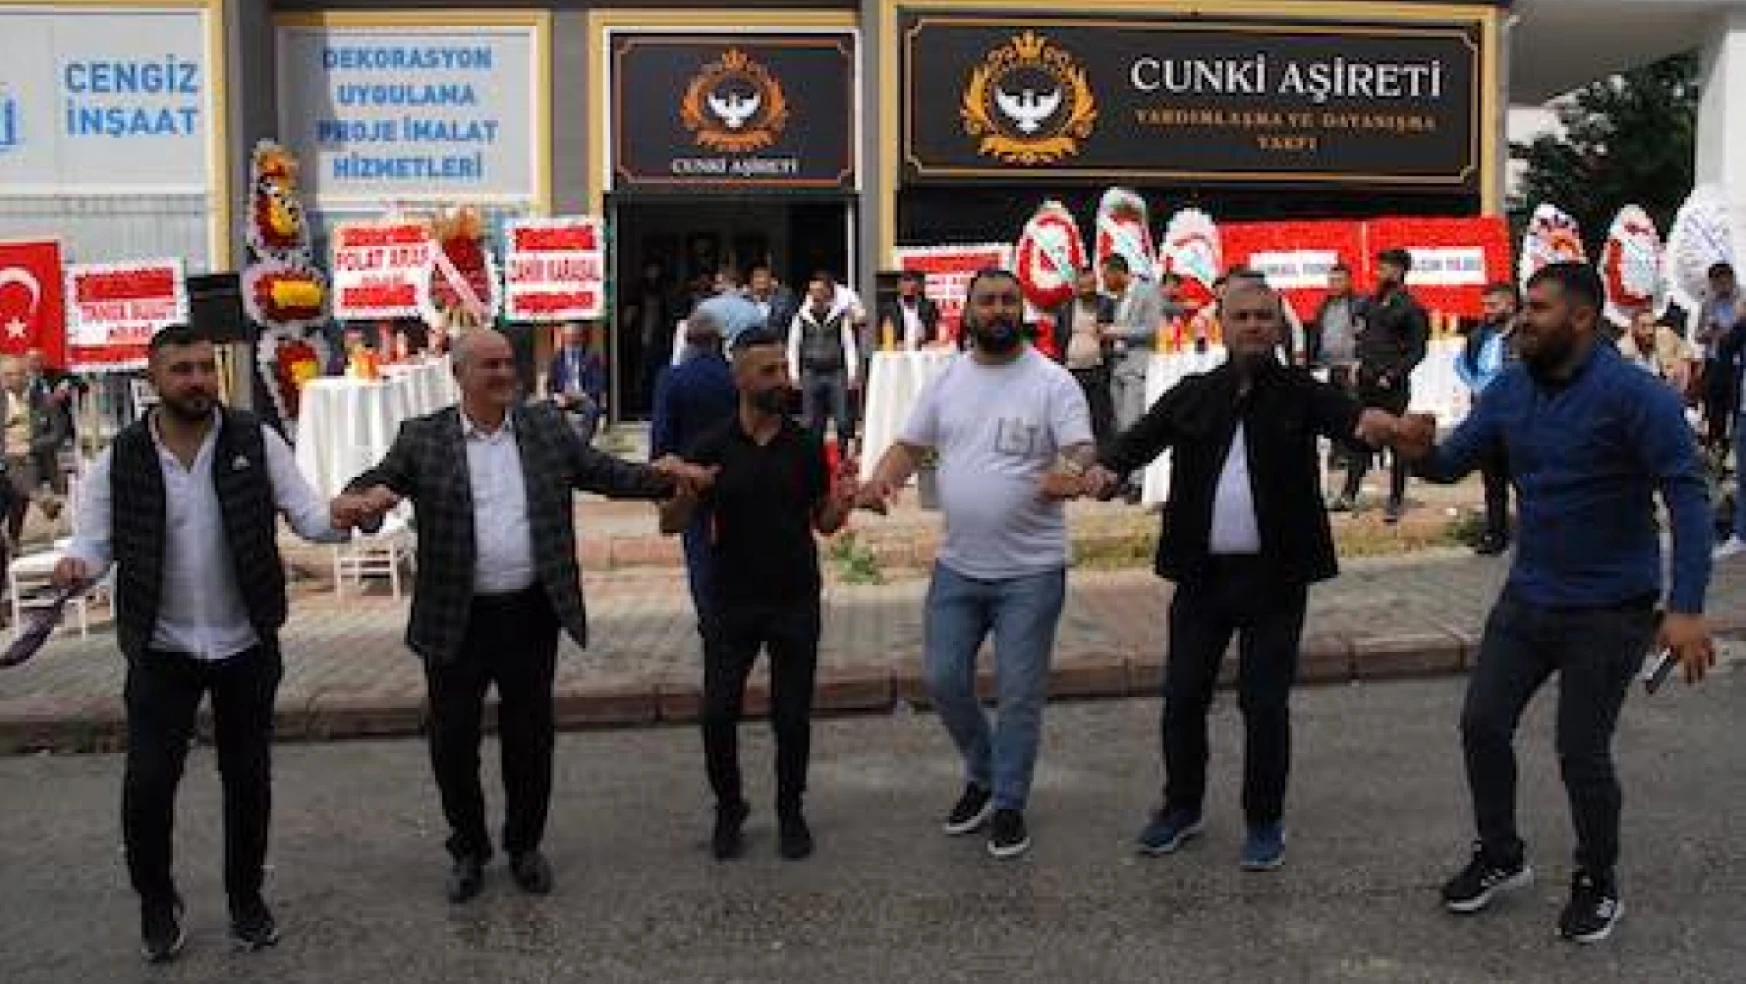 Ankara'daki Cunki Aşireti mensupları vakıf çatısı altında buluştu